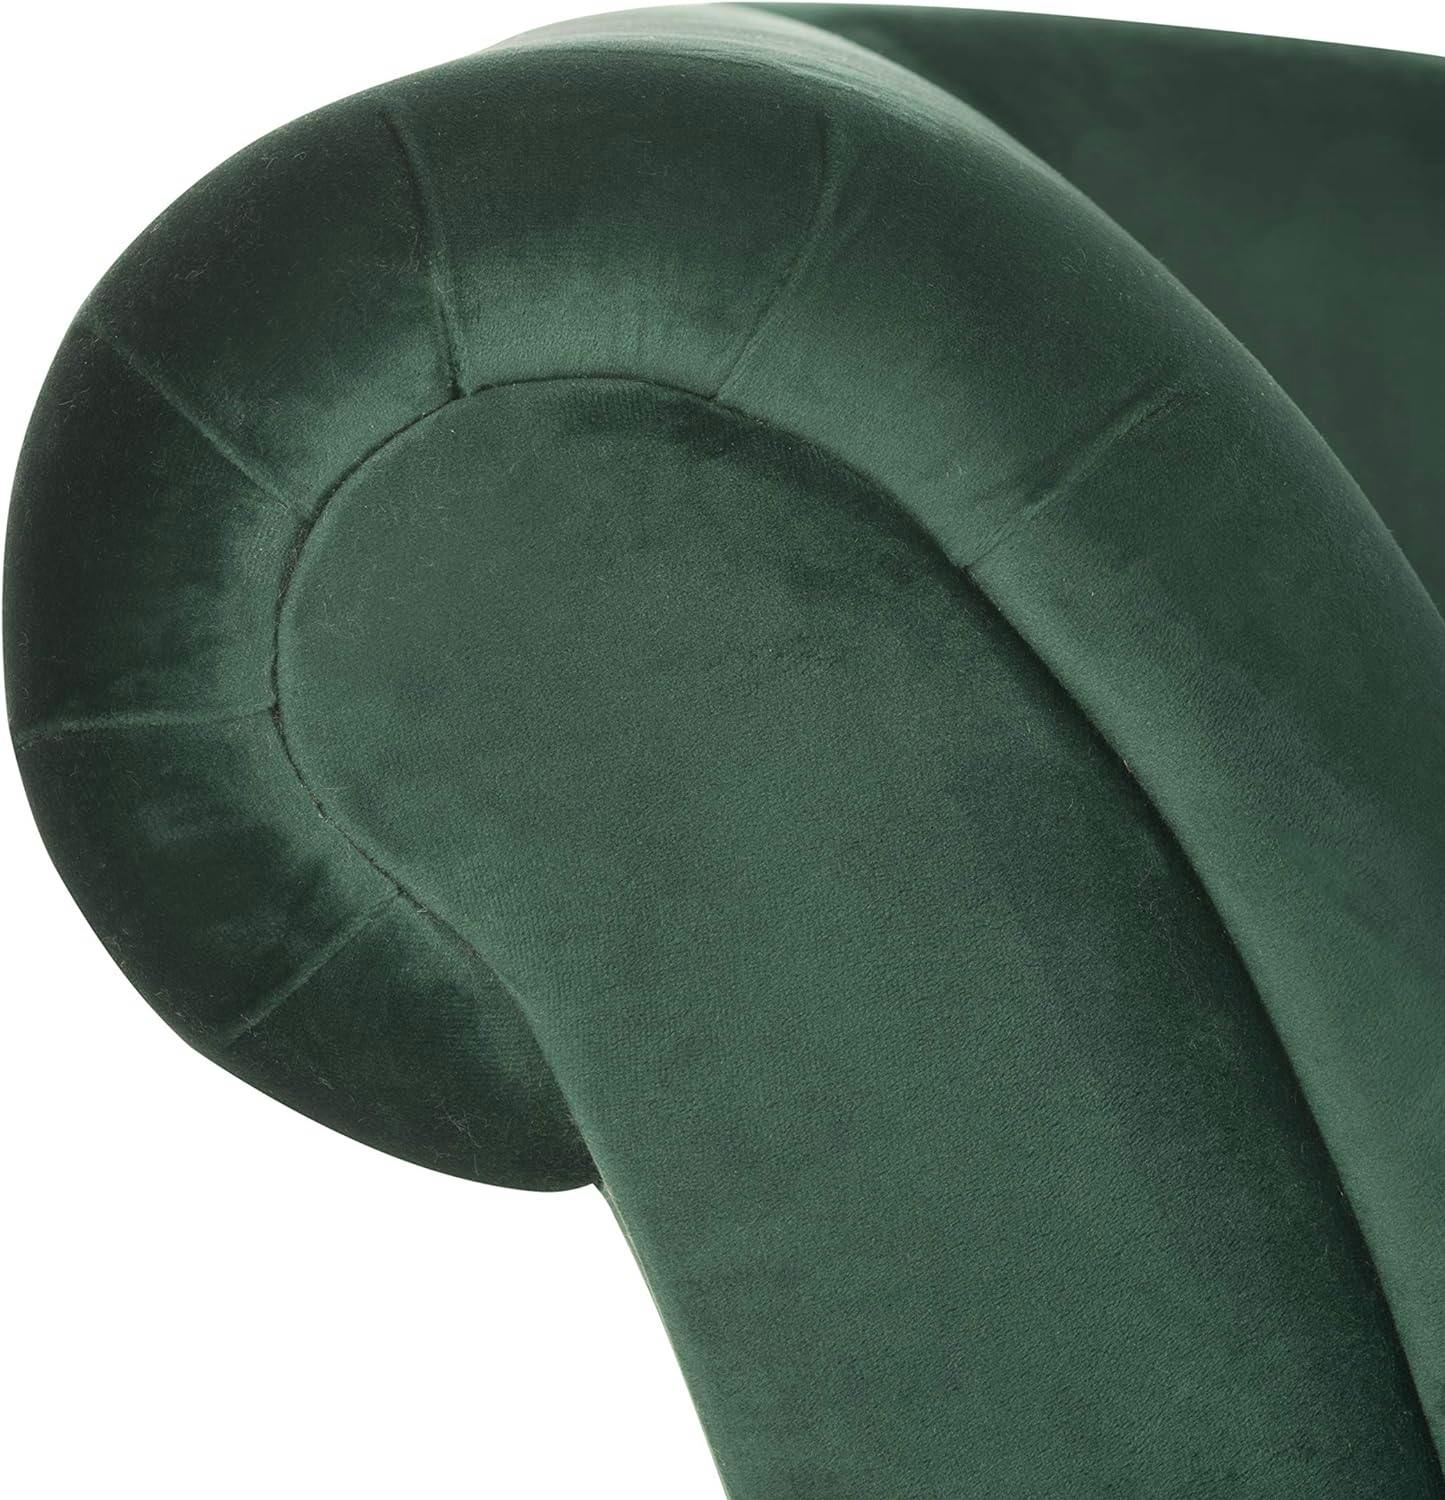 Emerald Green Velvet 63'' Transitional Stationary Sofa